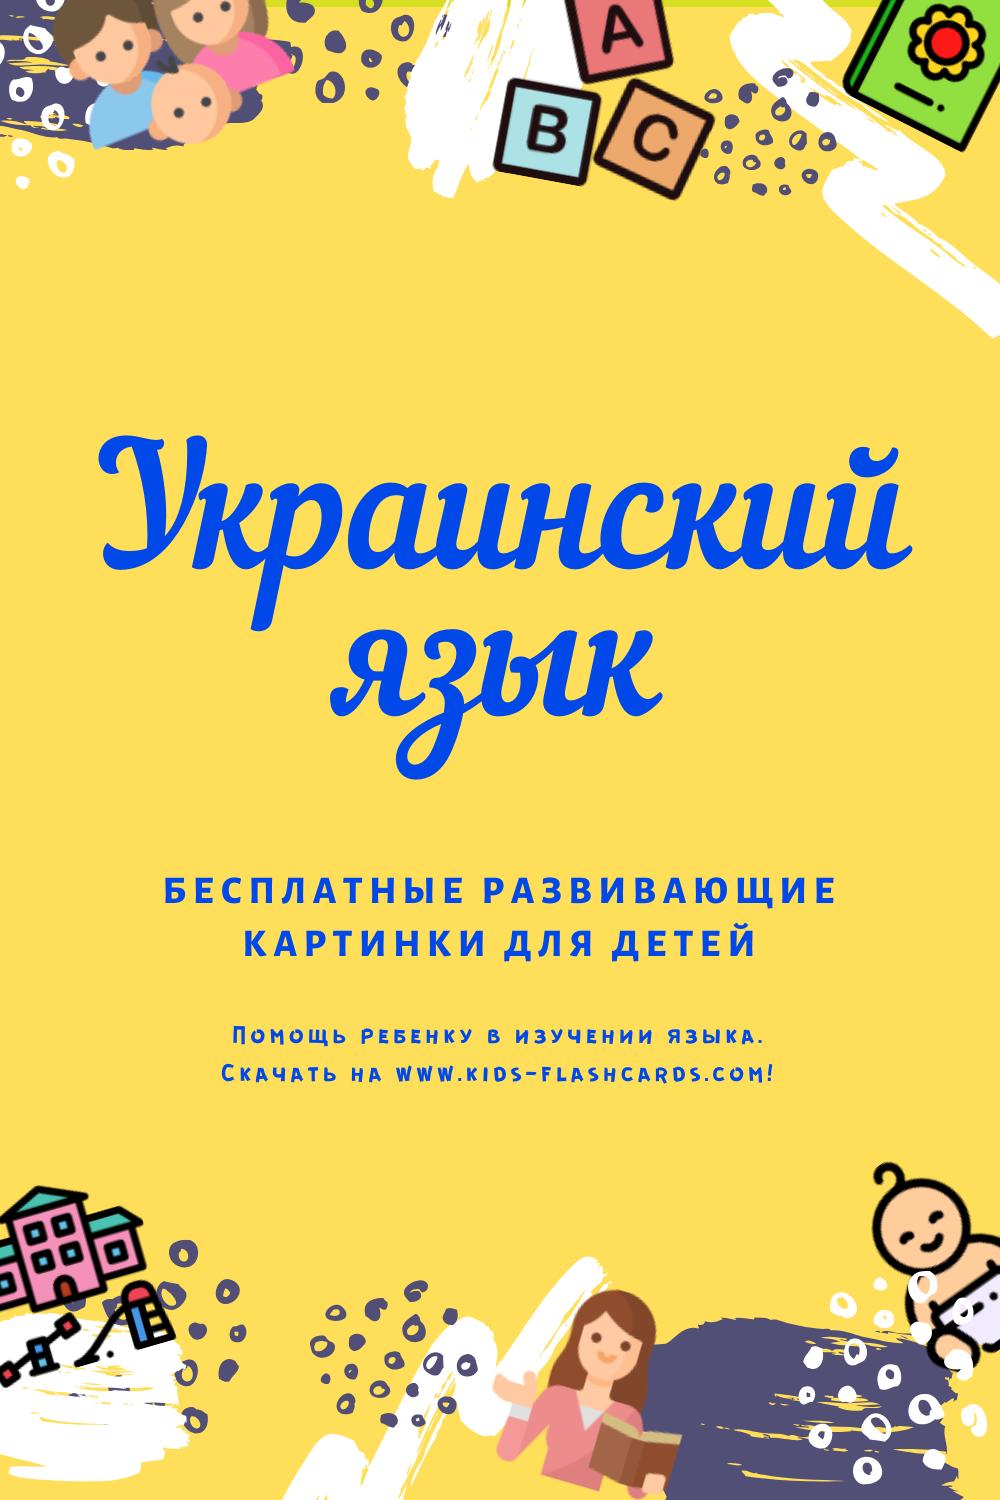 Украинский язык - бесплатные материалы для печати